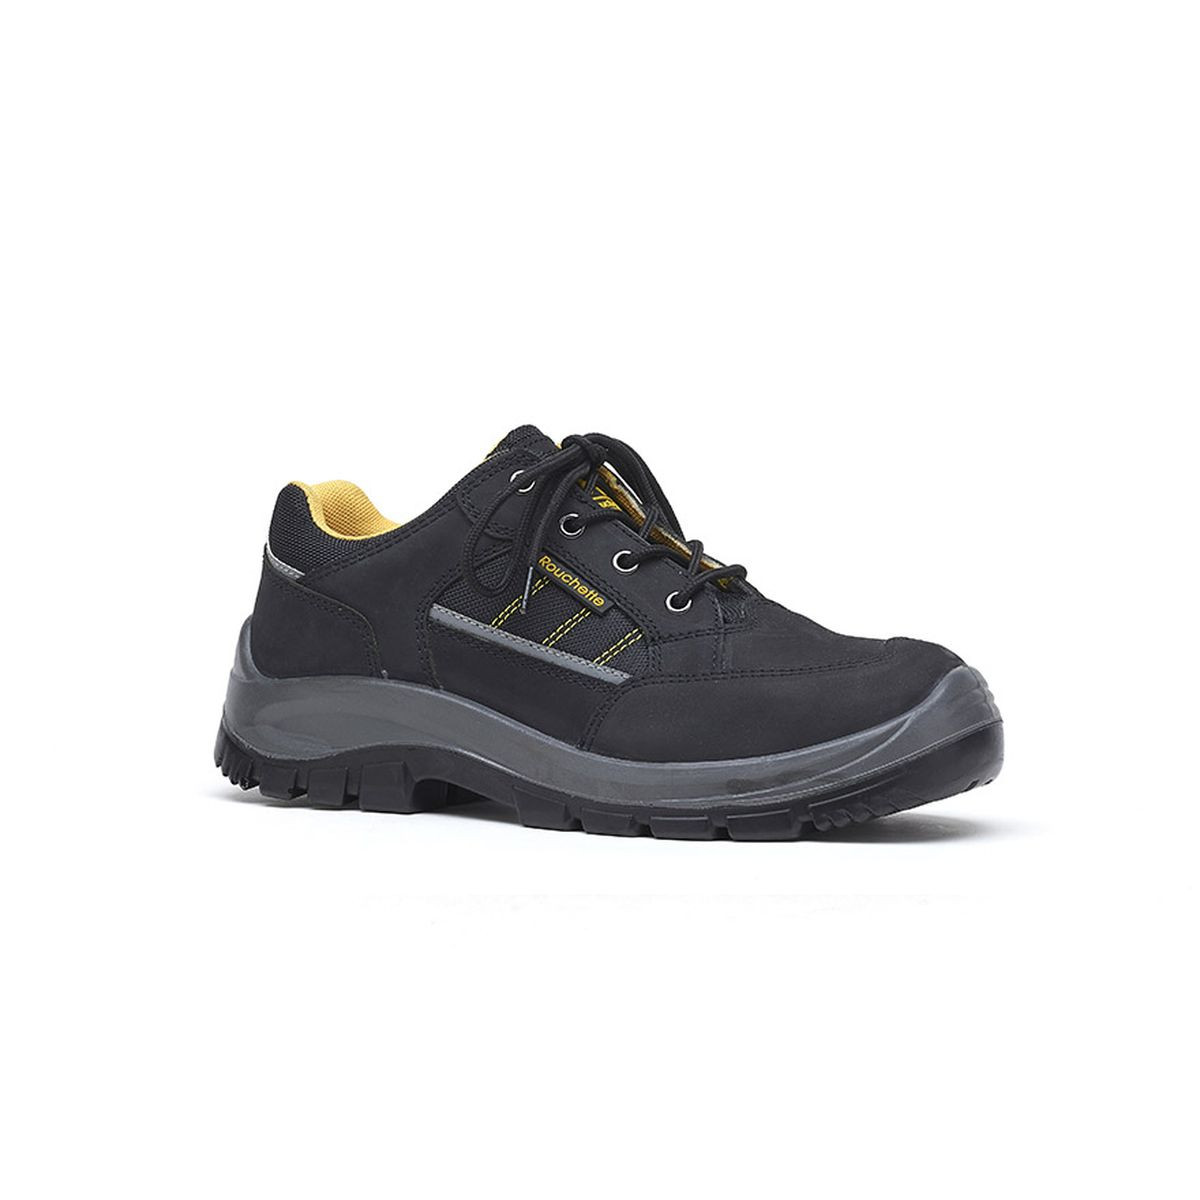 Chaussures de sécurité BOSTON noir et jaune T43